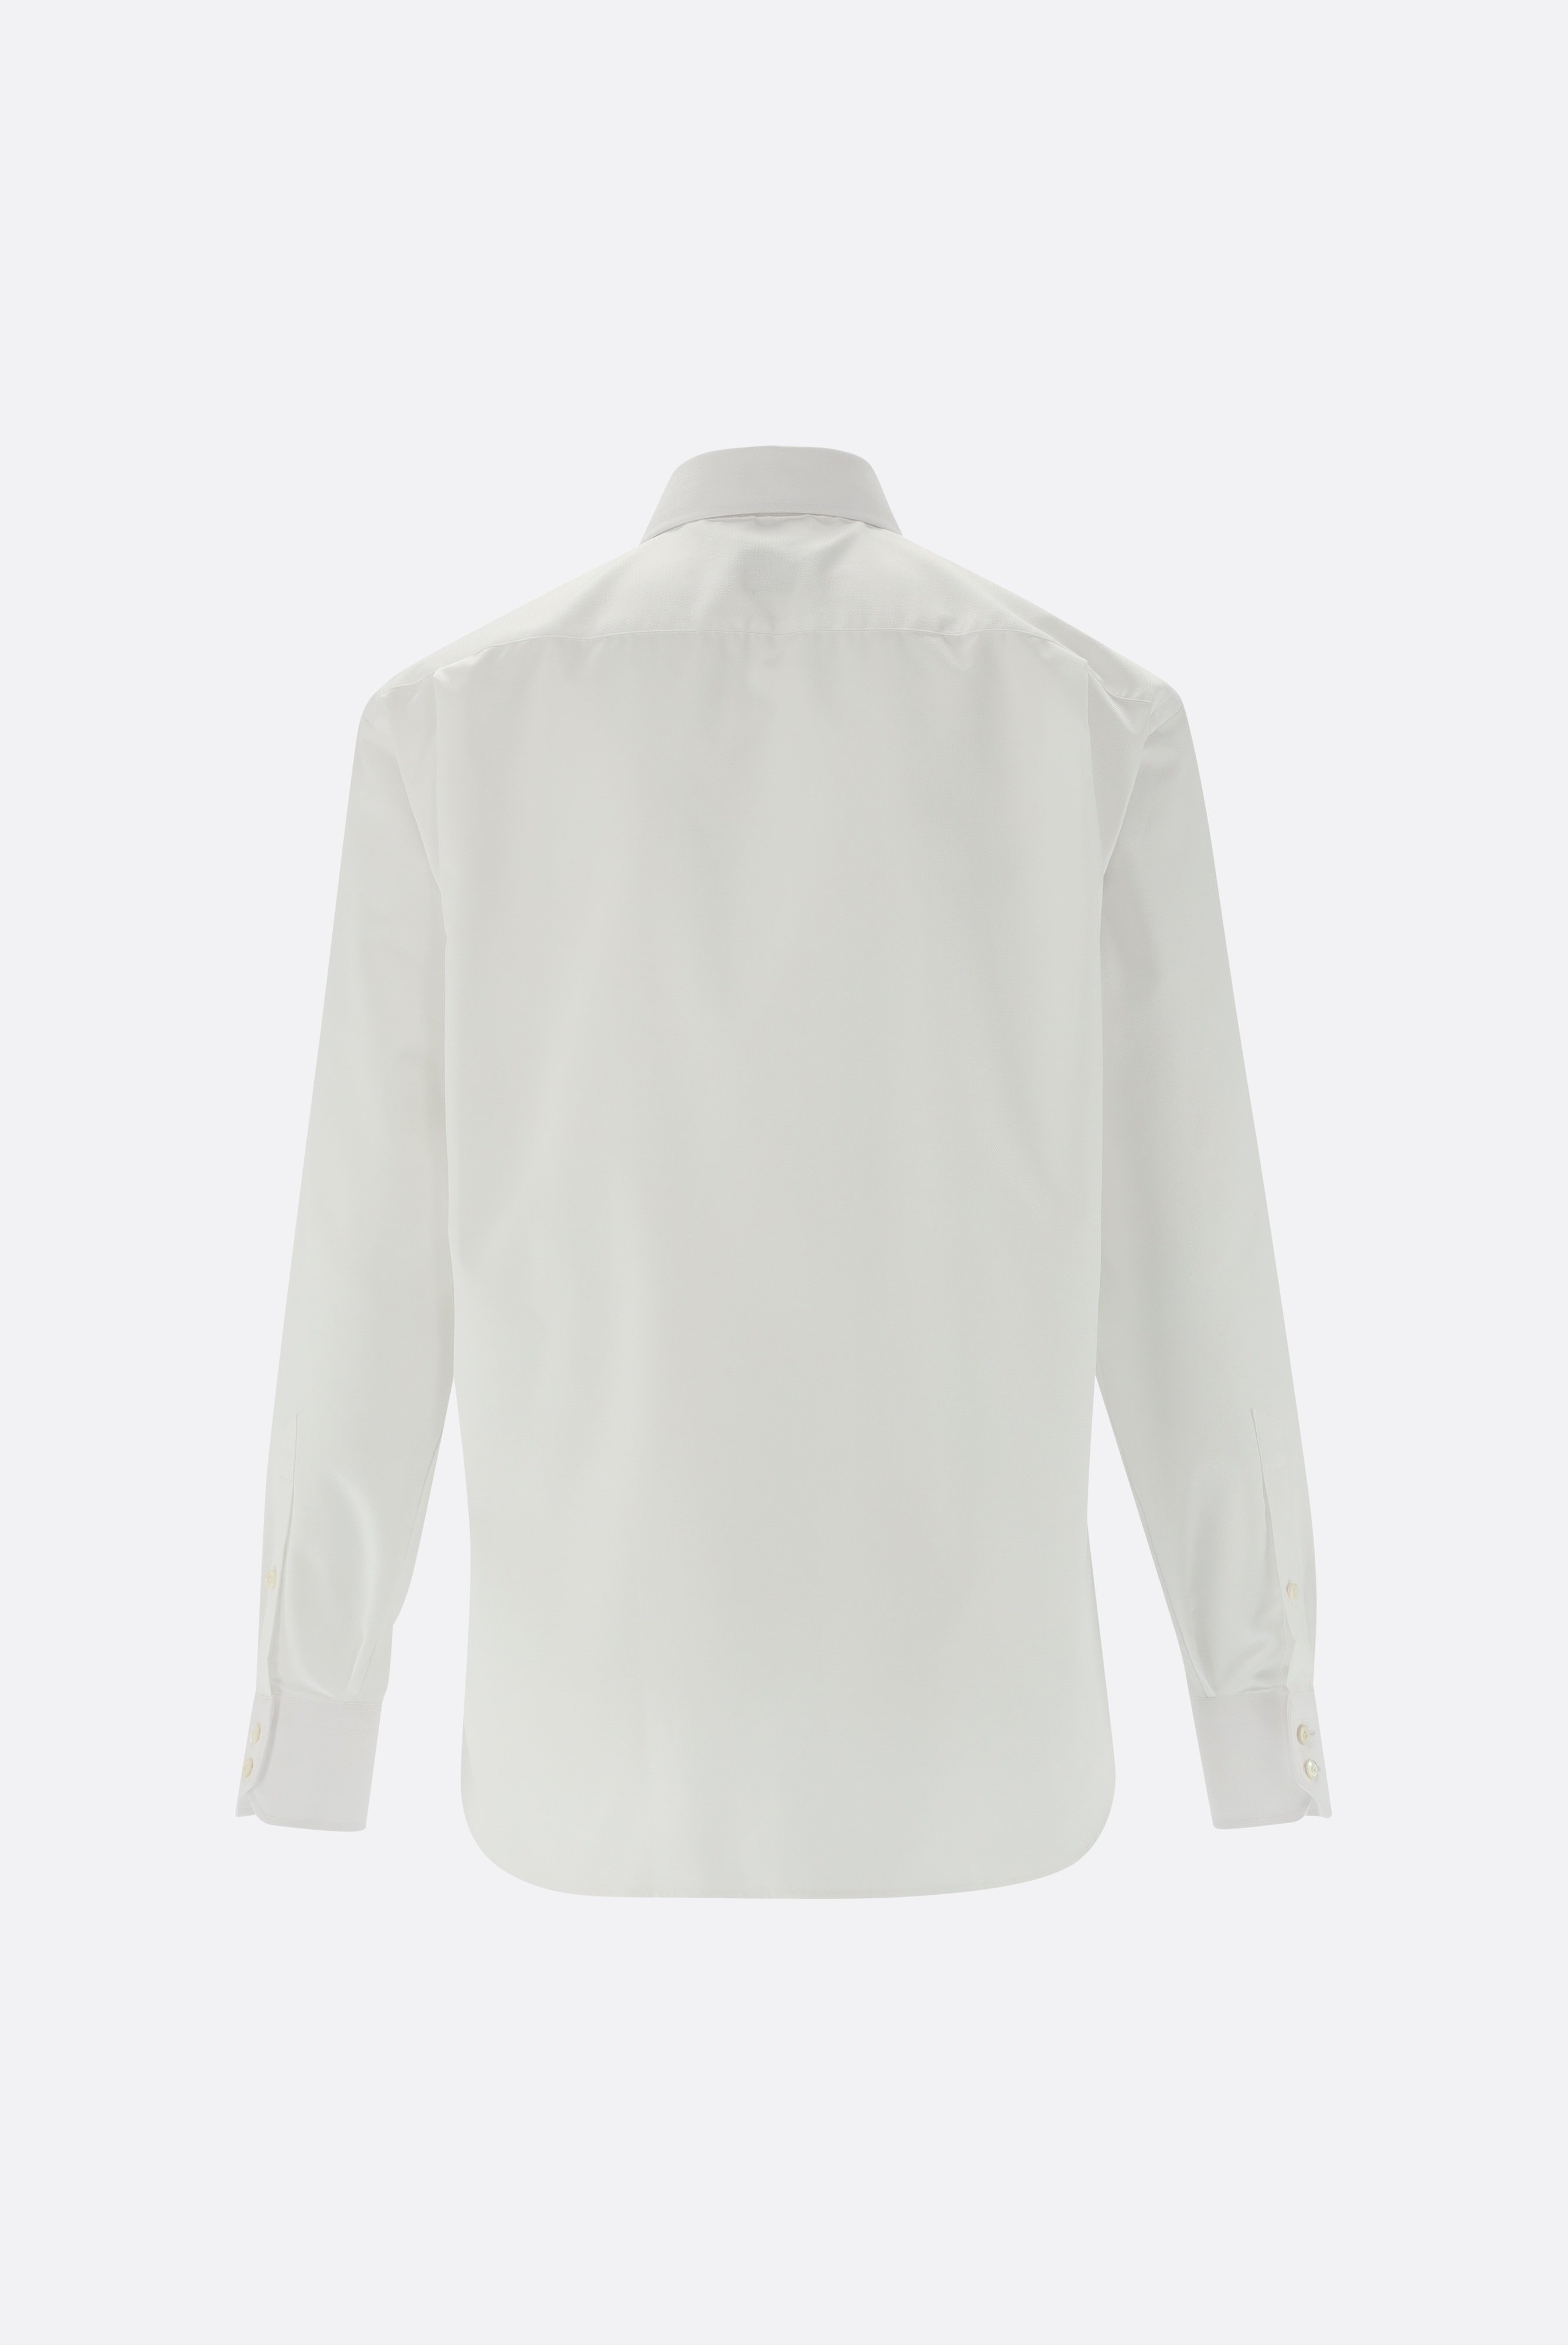 Bügelleichte Hemden+Bügelfreies Twil Hemd mit Struktur Comfort Fit+20.2021.BQ.150301.000.39